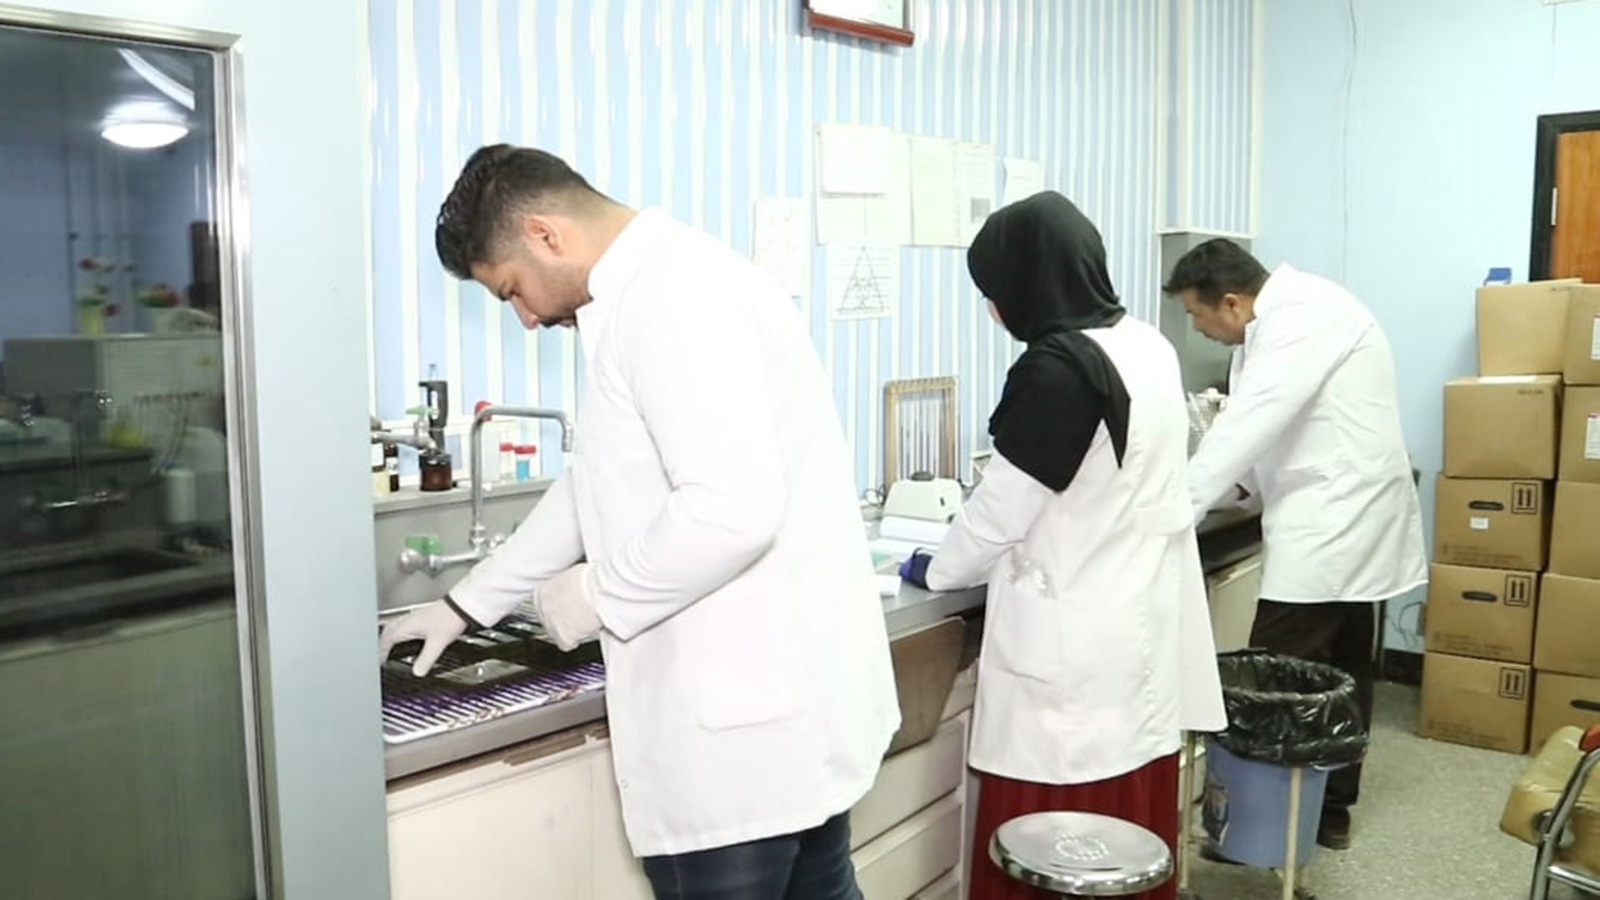 مختبر علمي يقوم بفحص عينات دم للتأكد من الإصابات بكورونا (الجزيرة)